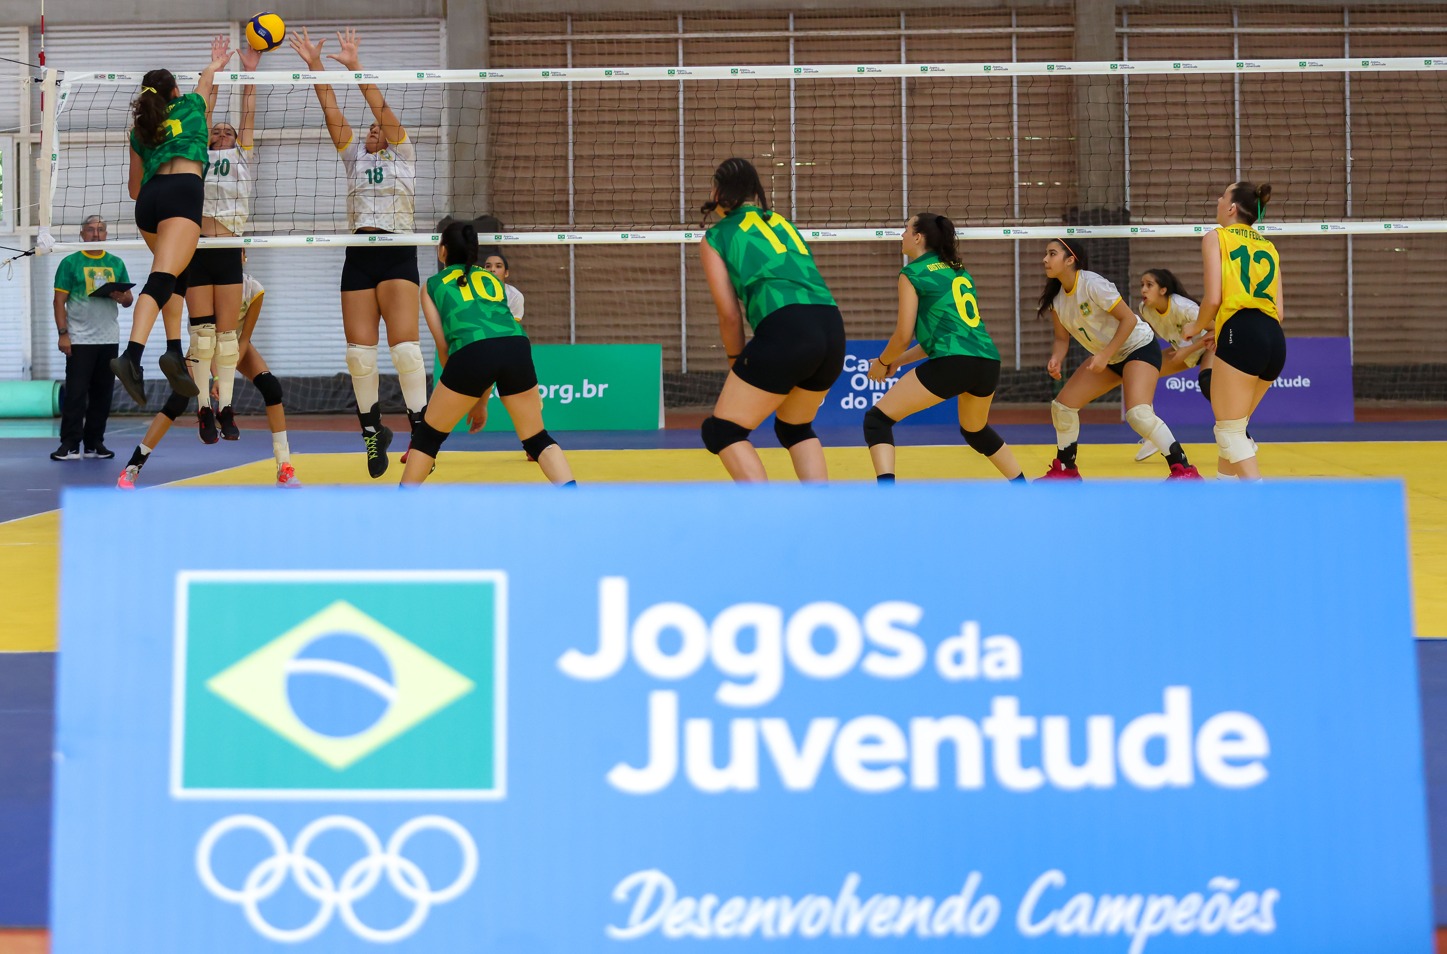 Volei é uma das modalidades nos Jogos da juventude em Ribeirão Preto | Crédito: Beto Noval/COB